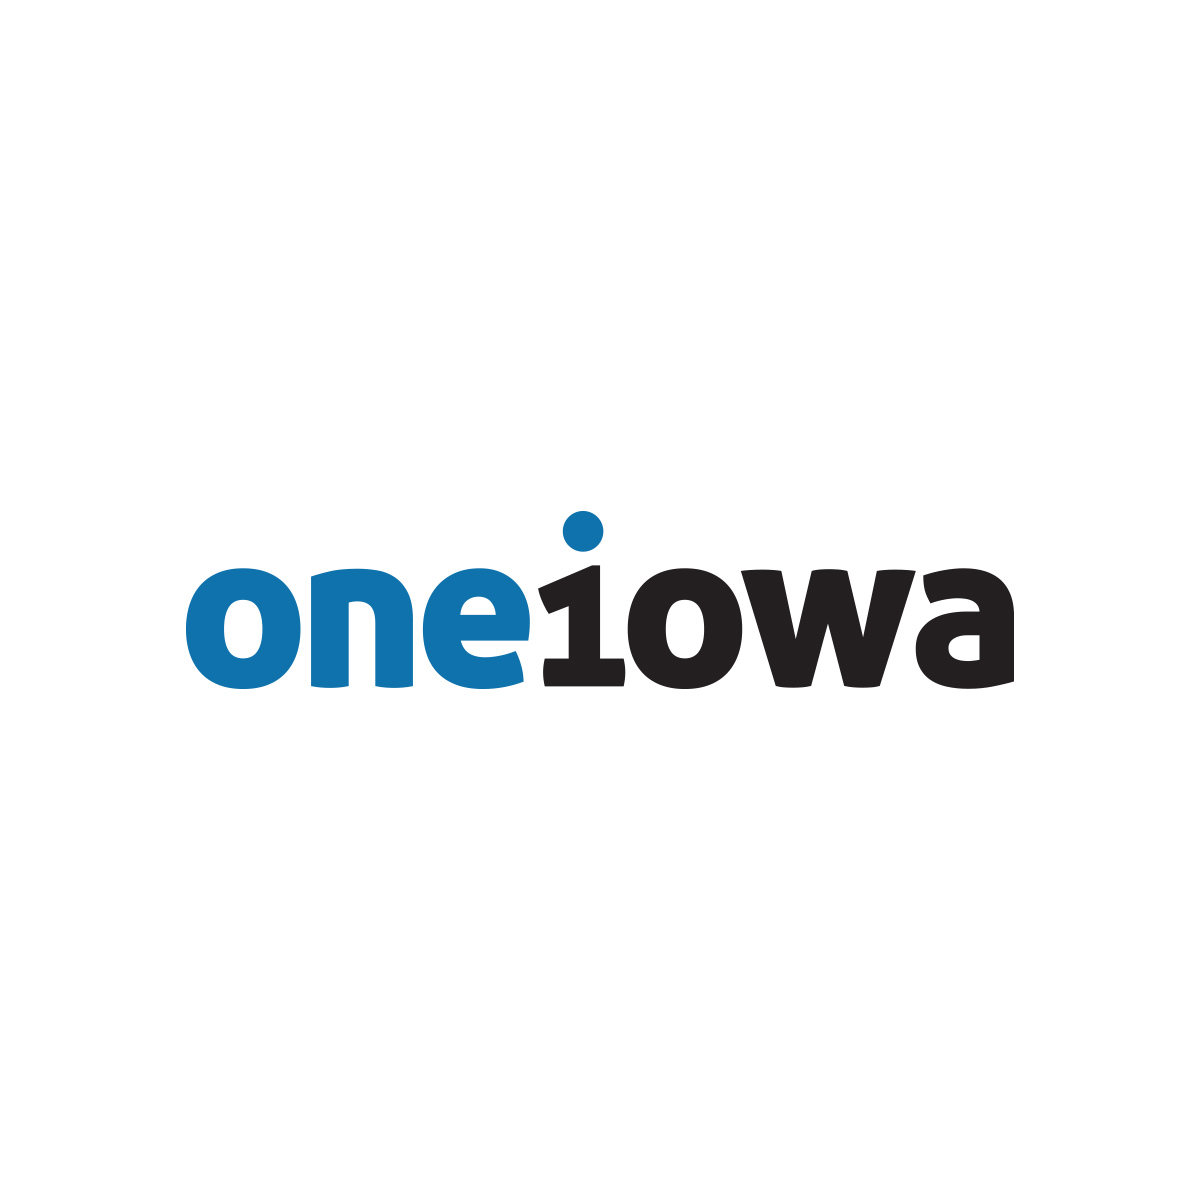 one iowa logo